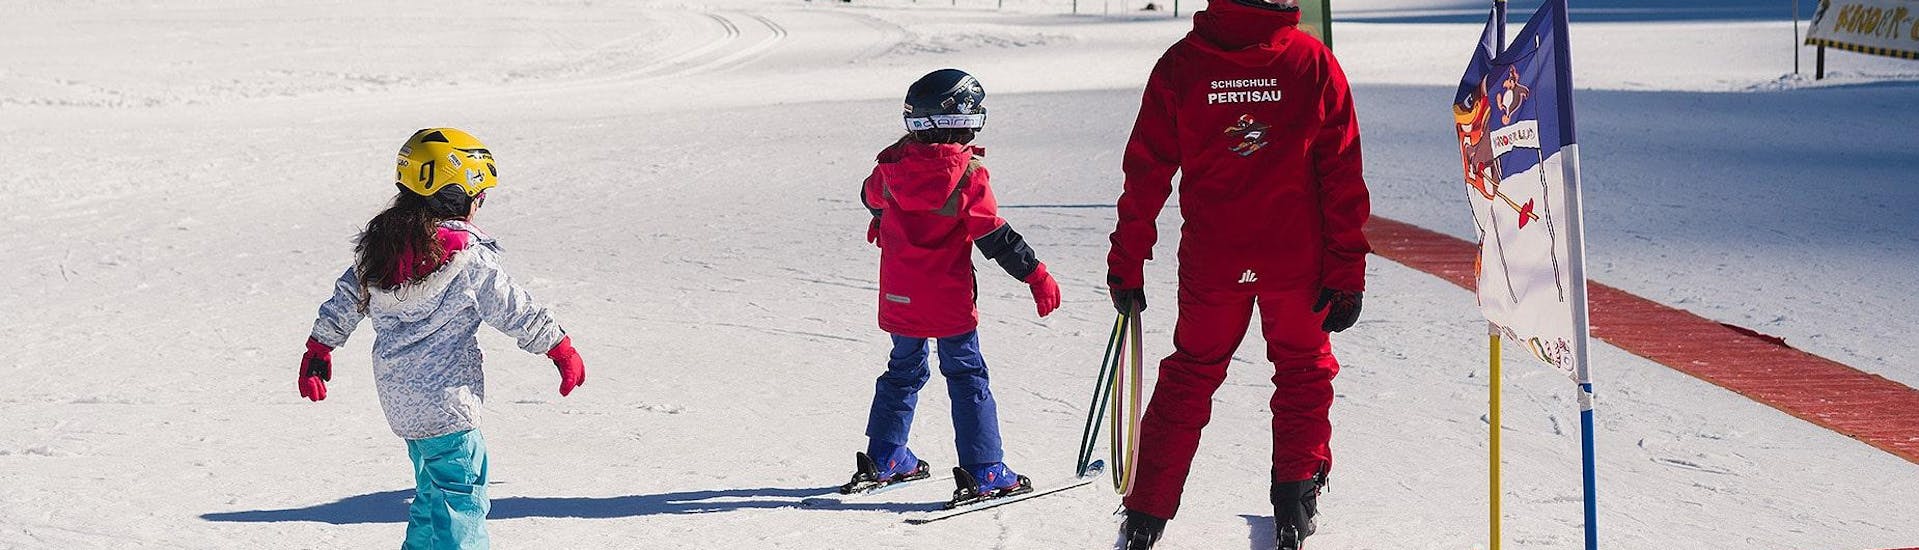 Cours particulier de ski Enfants pour Tous niveaux avec Schischule Pertisau - Hero image